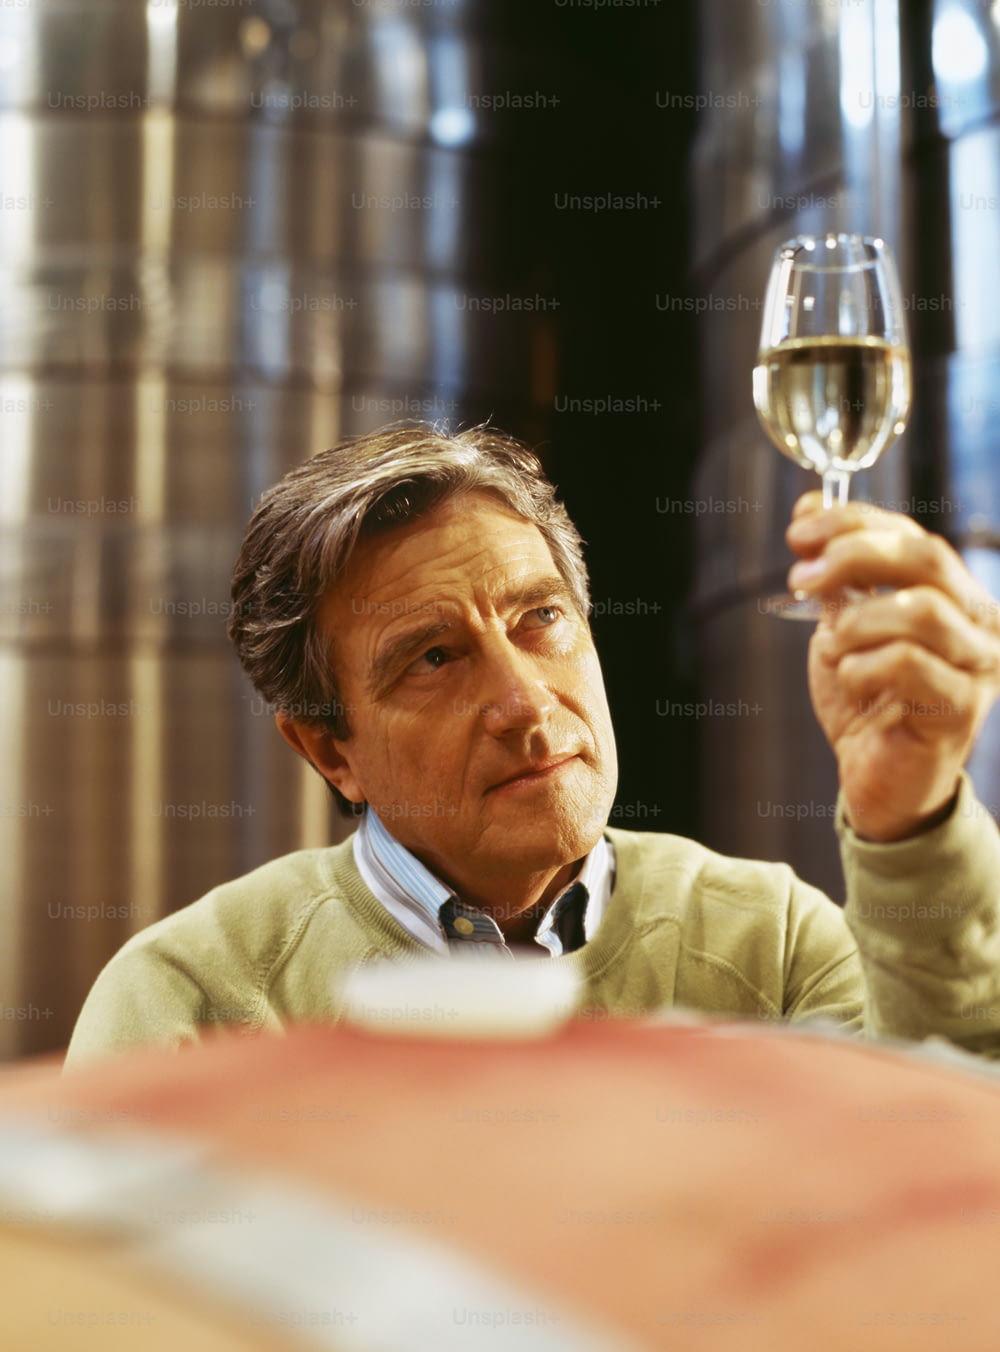 Ein Mann, der ein Glas Wein in der Hand hält